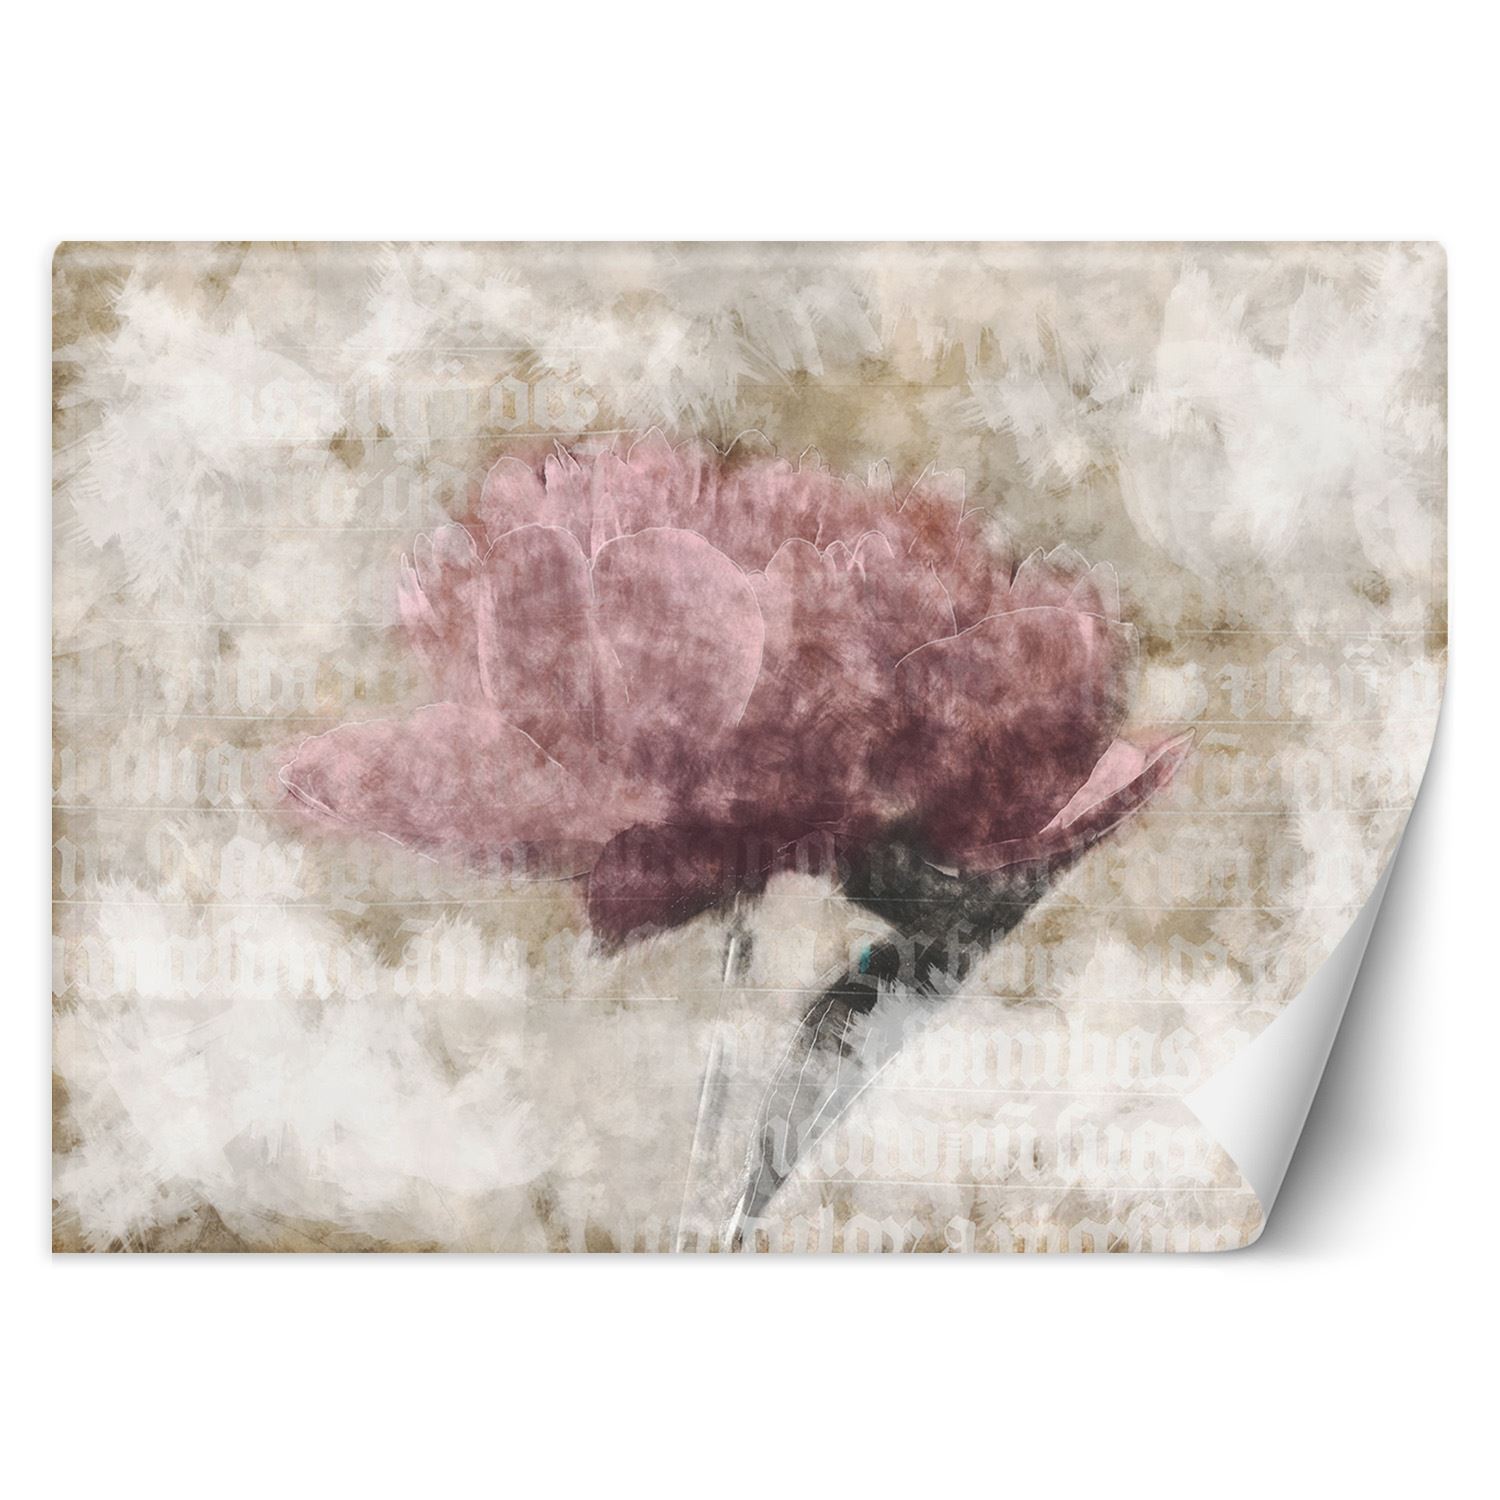 Trend24 – Behang – Abstracte Bloemen In Pastelkleuren – Vliesbehang – Fotobehang 3D – Behang Woonkamer – 400x280x2 cm – Incl. behanglijm